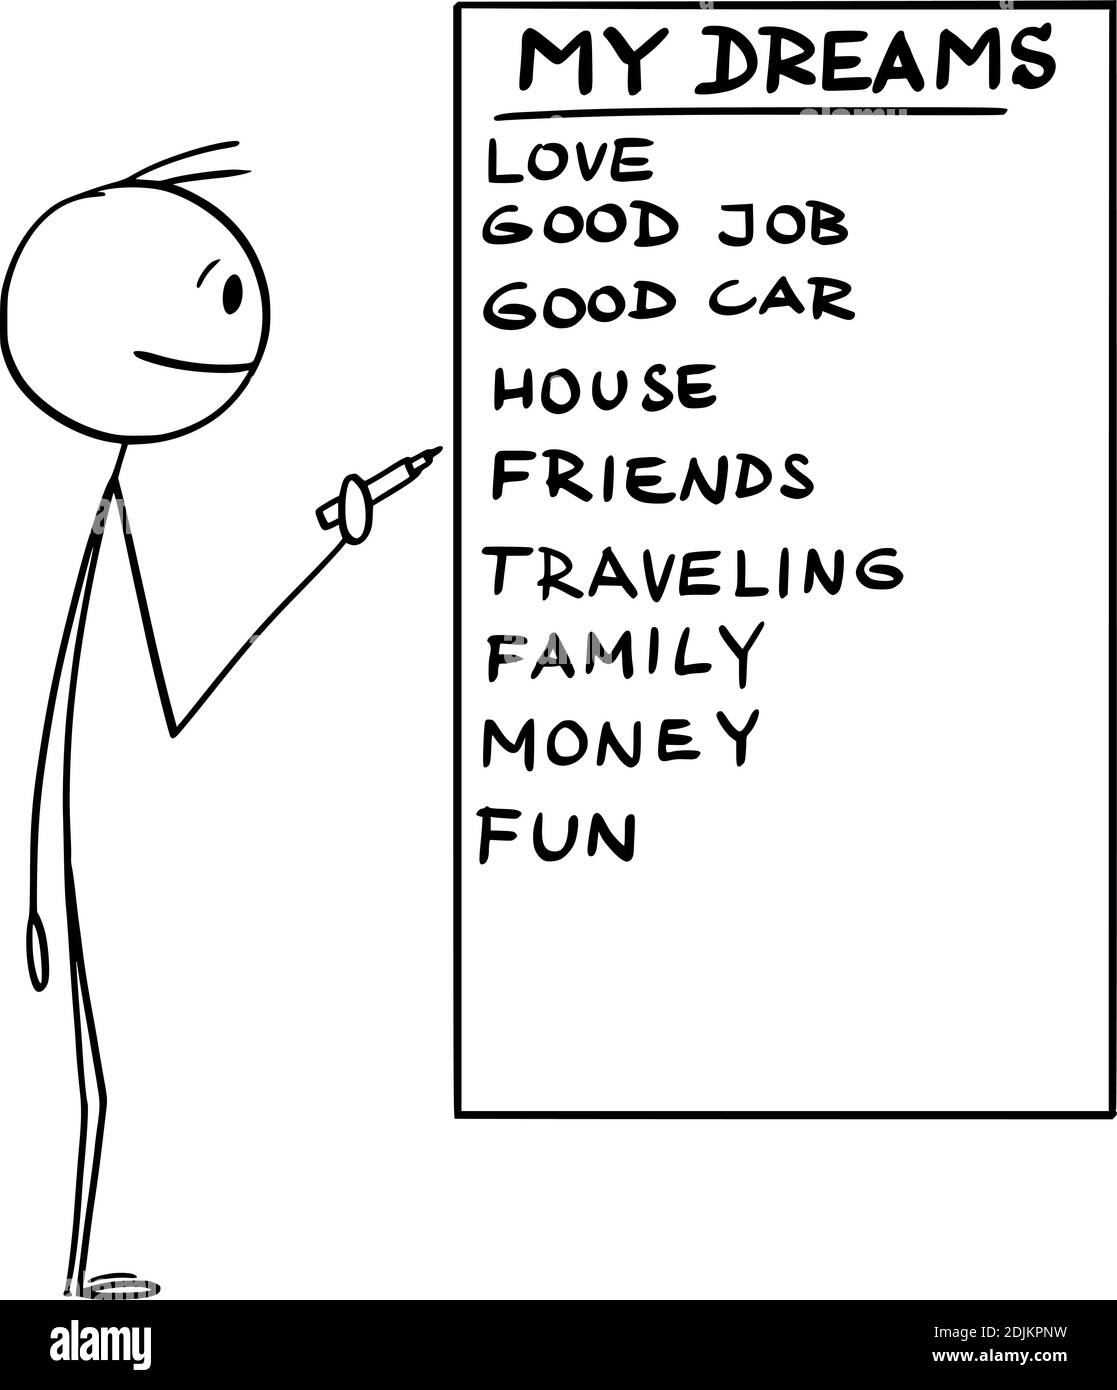 Vektor Cartoon Stick Figur Illustration des Mannes hält Marker oder Stift und schreiben Liste seiner Lebensträume auf Whiteboard. Stock Vektor